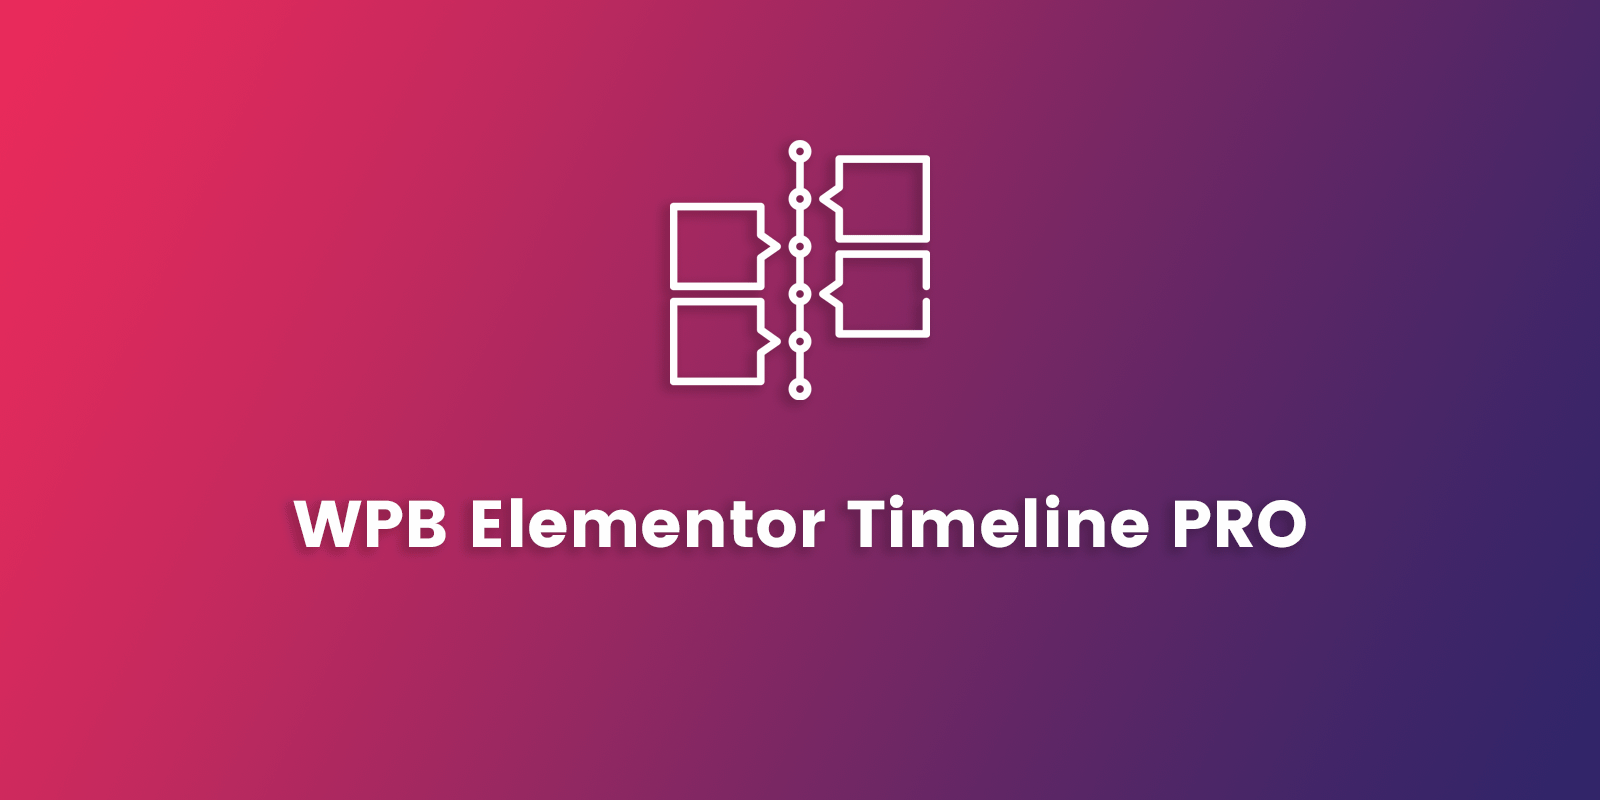 WPB Elementor Timeline PRO